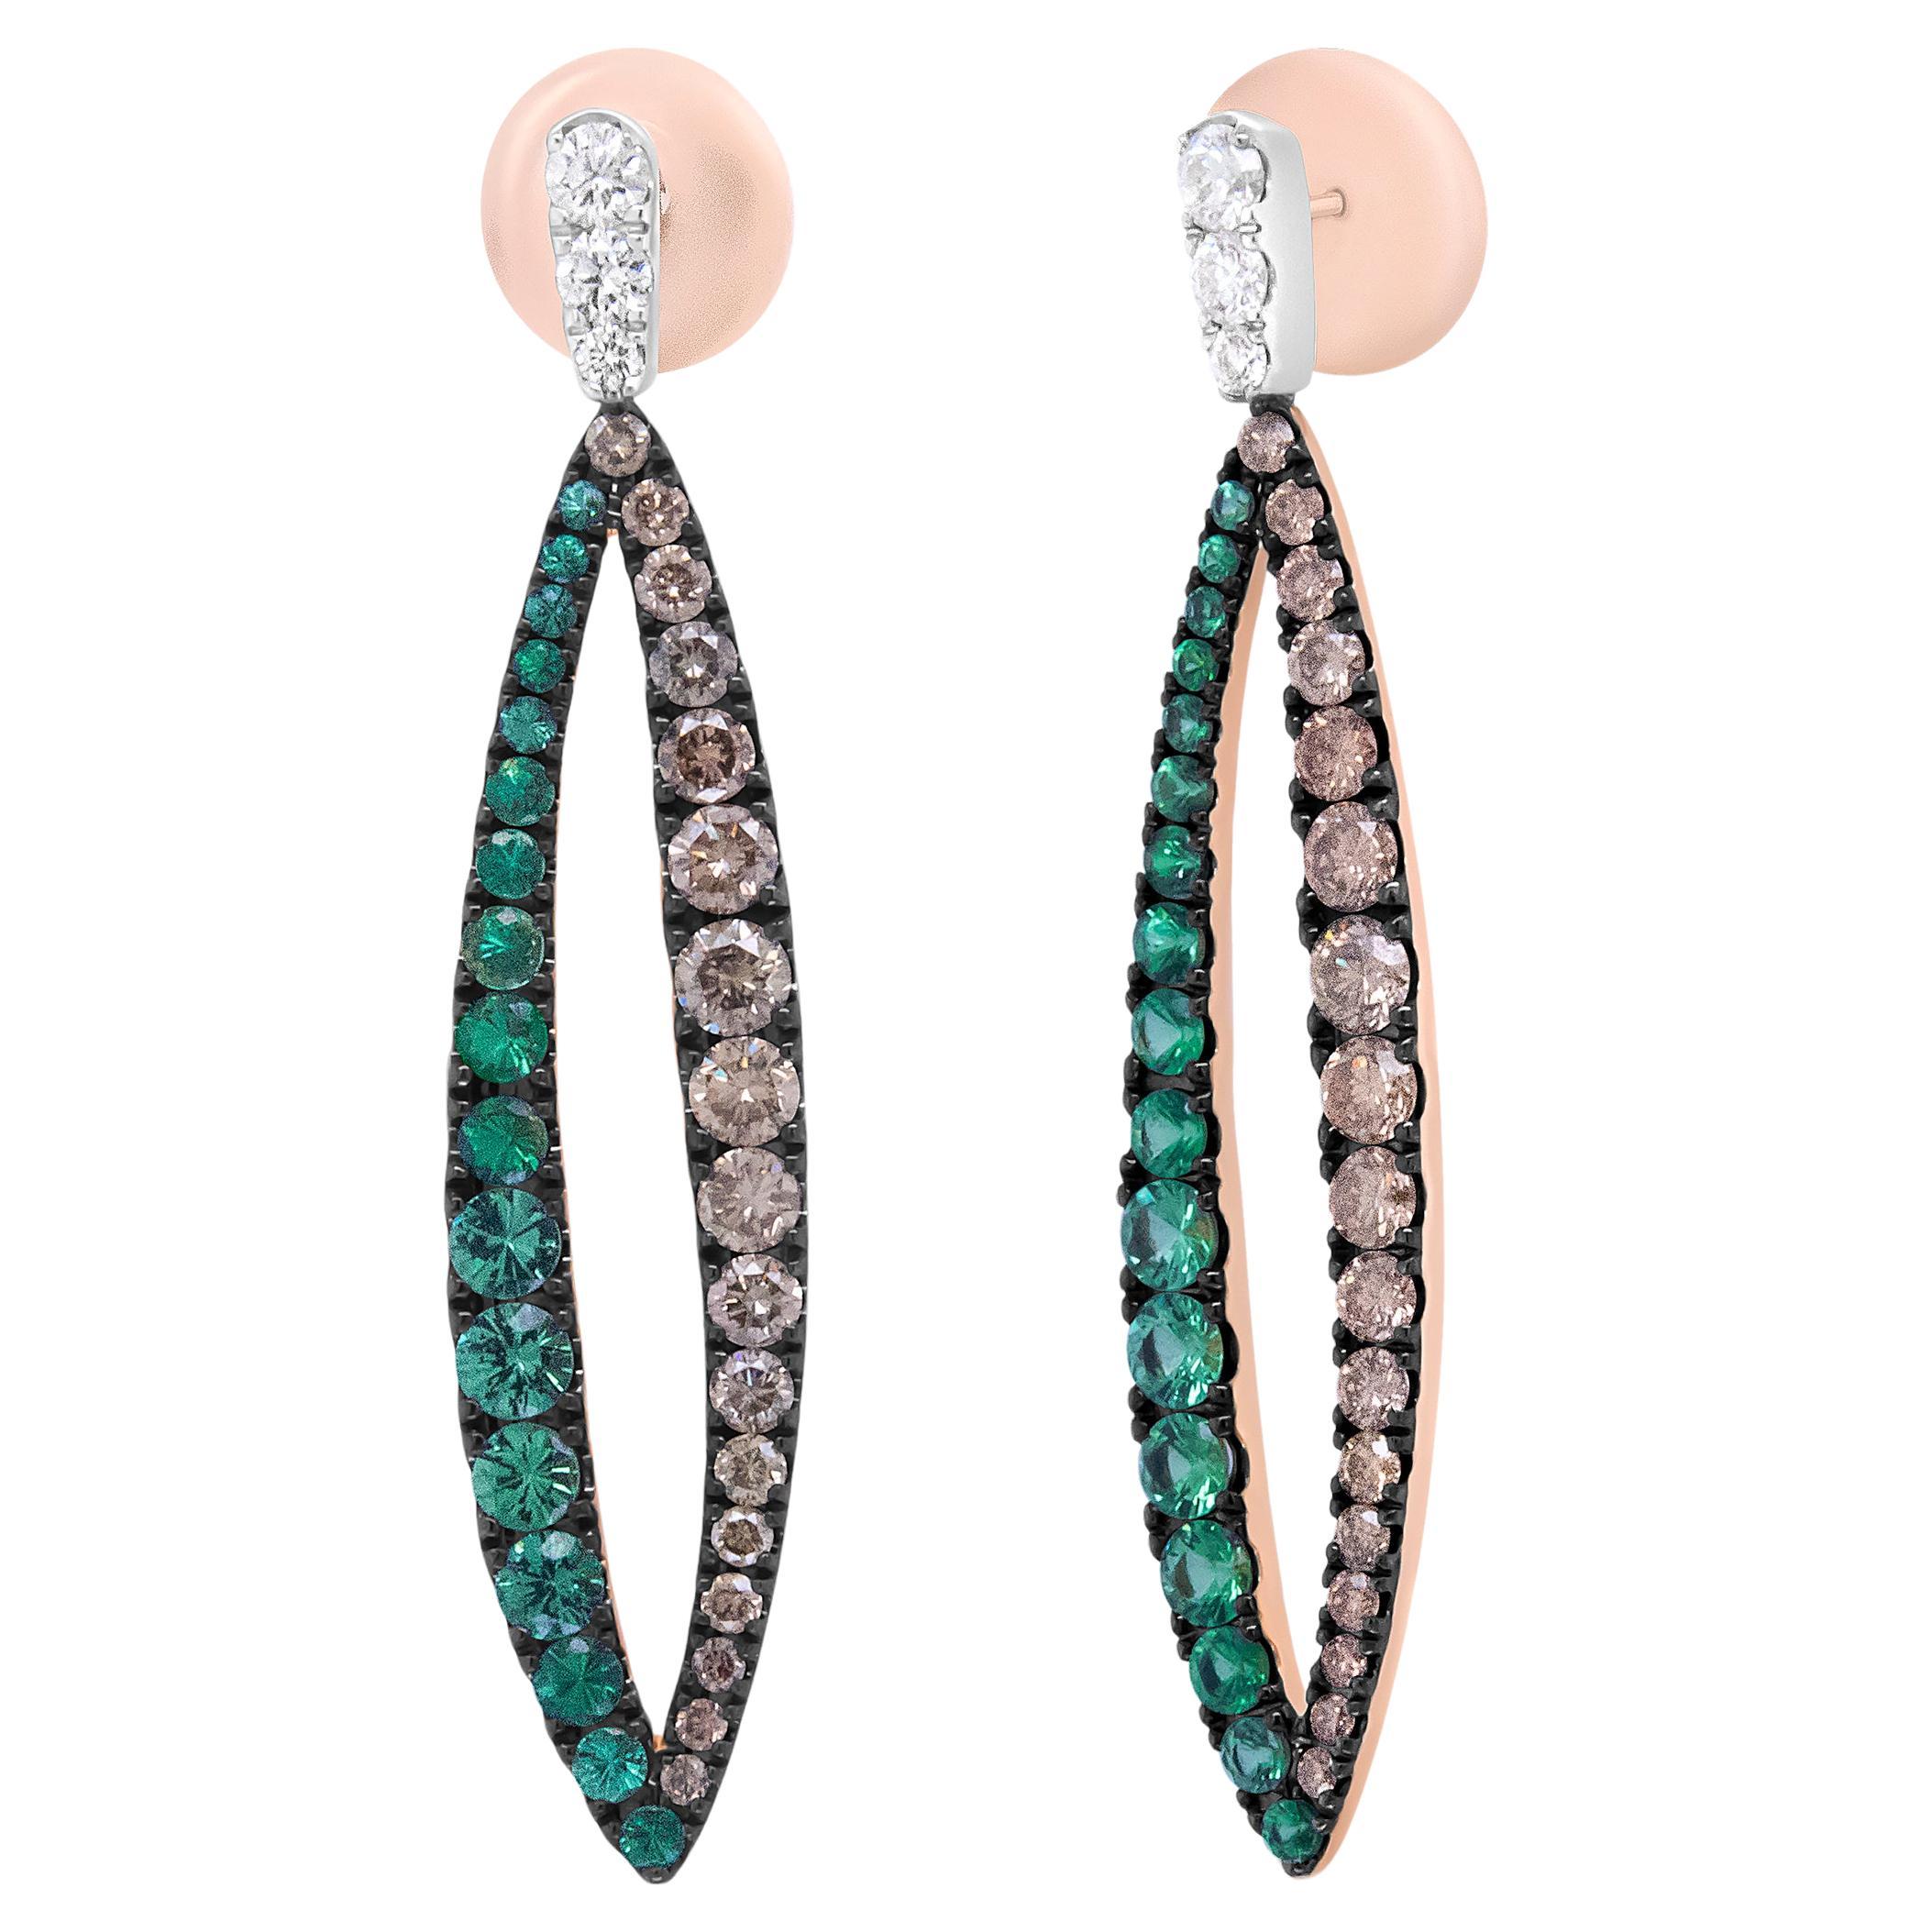 18K White and Rose Gold 4 3/4 Carat Diamond Green Tsavorite Dangle Earrings